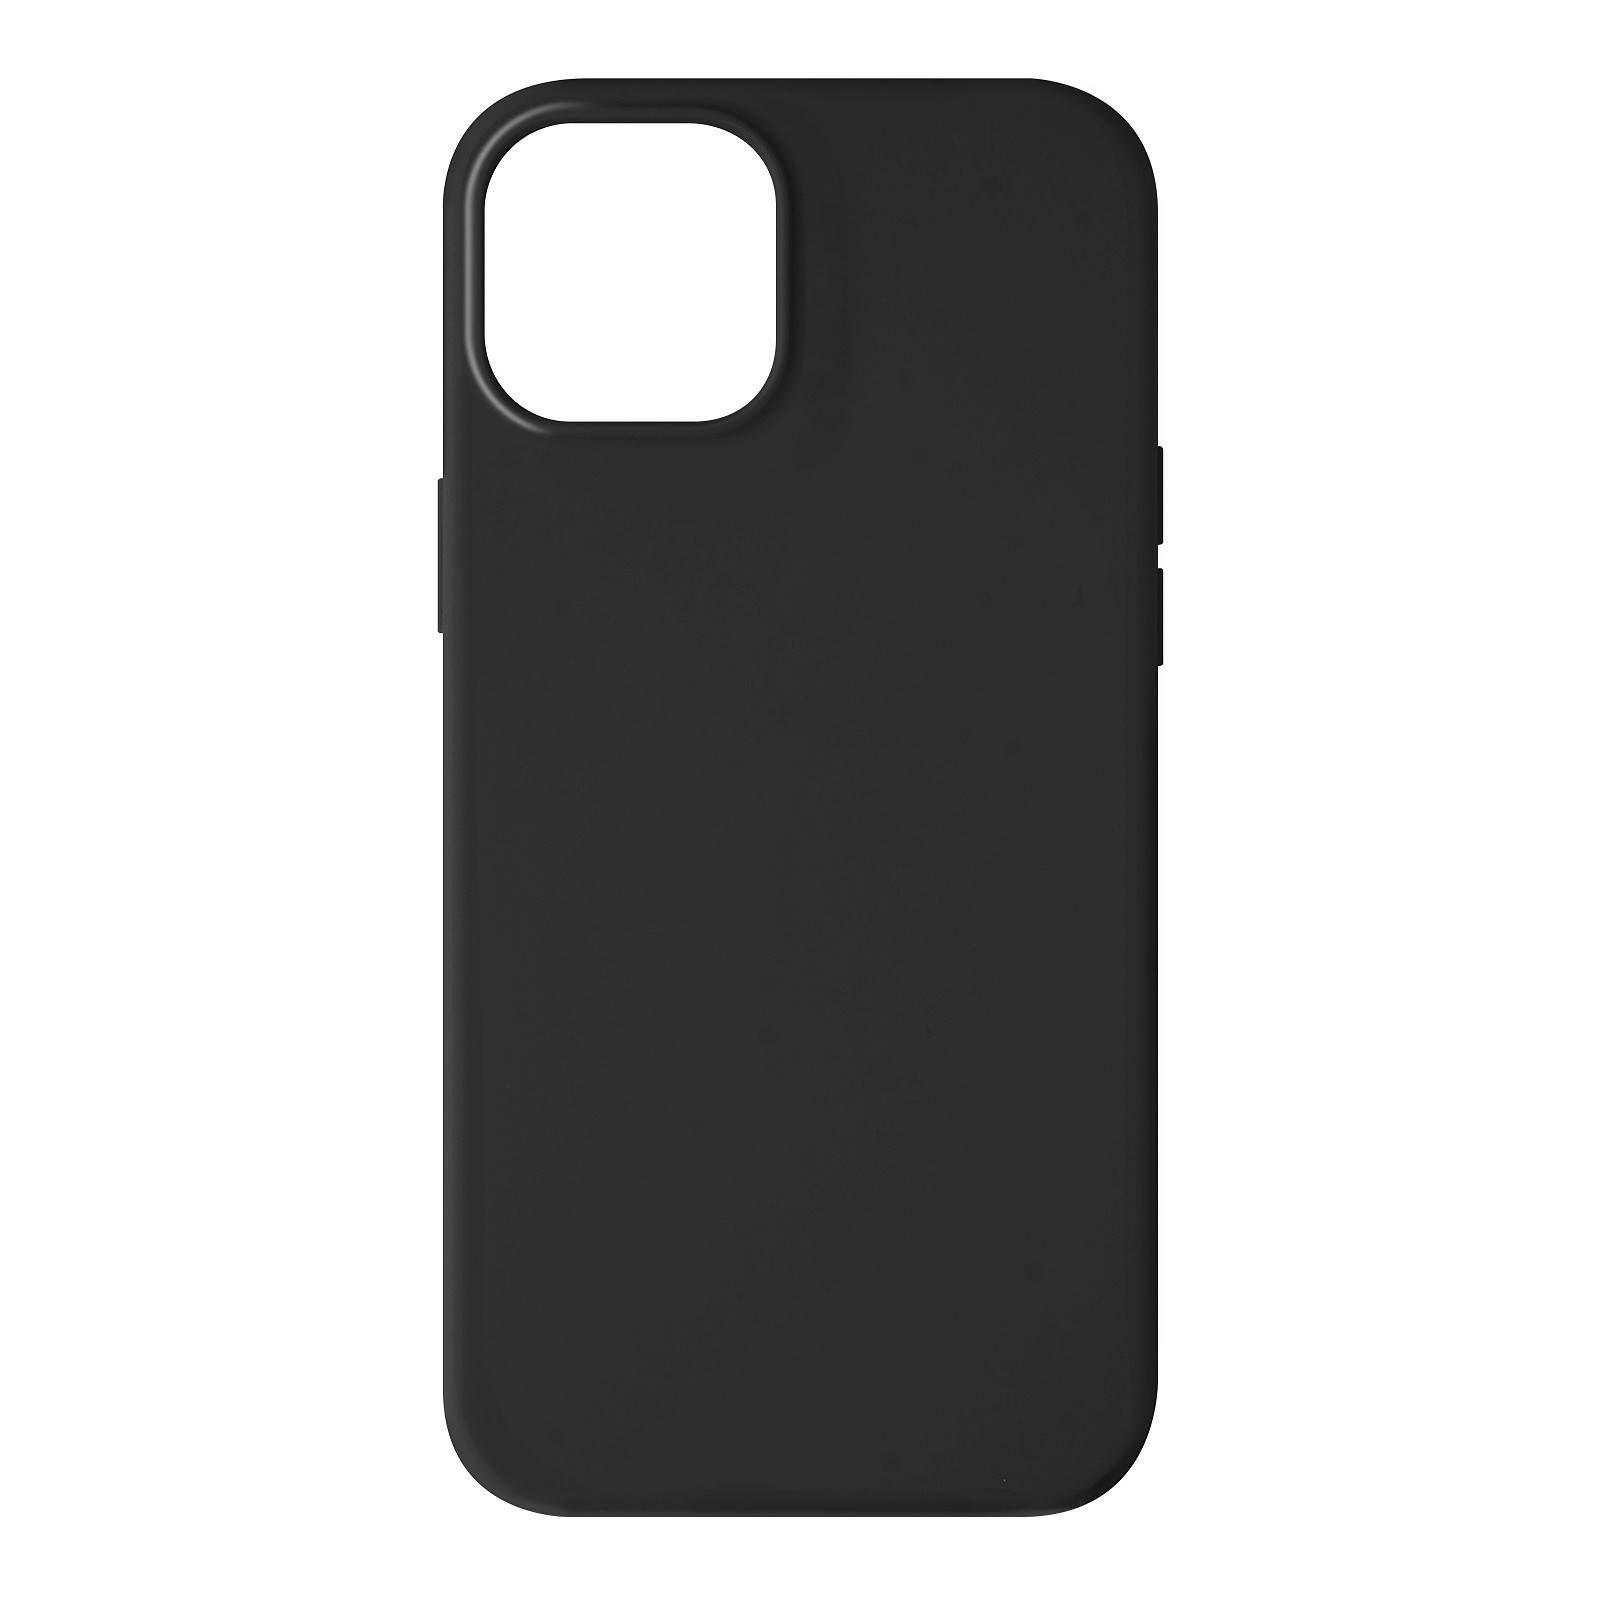 Avizar Coque pour iPhone 13 Mini Silicone Semi-rigide Finition Soft-touch Noir - Coque telephone Avizar